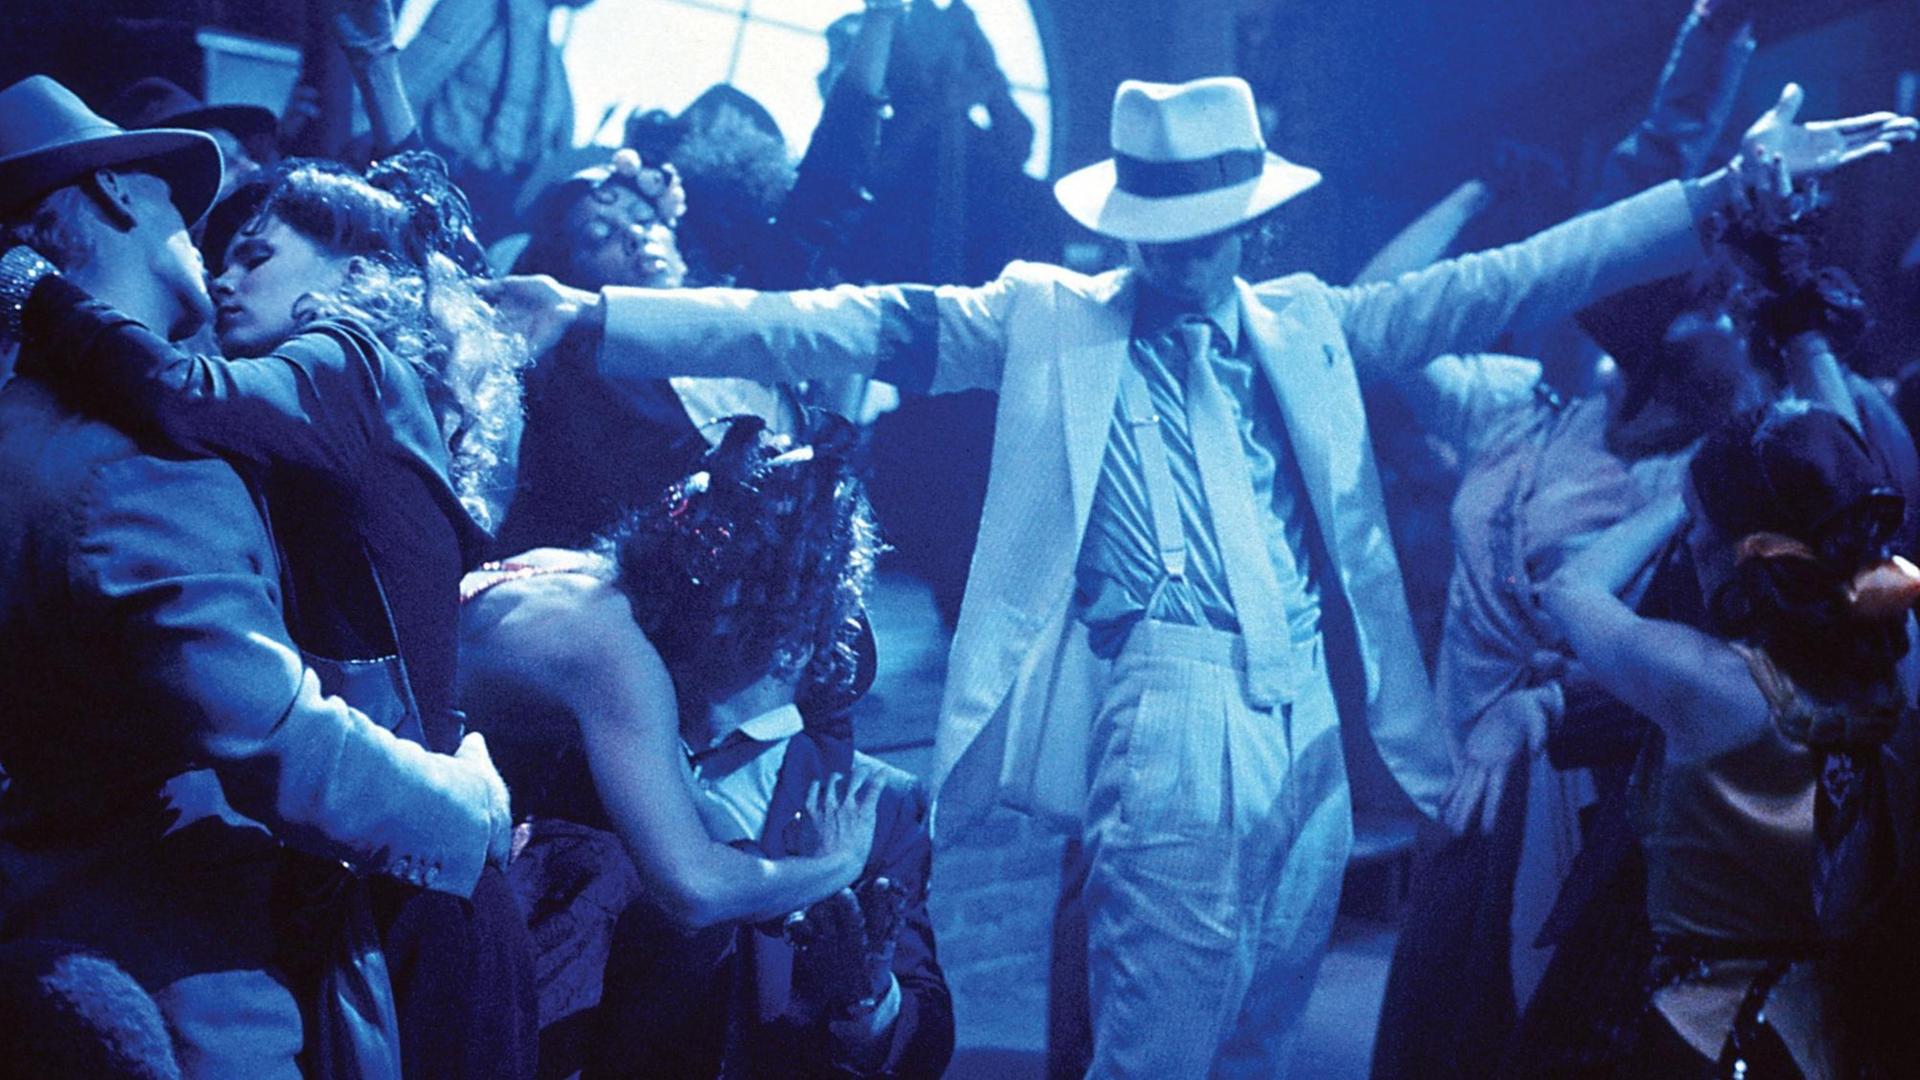 Mit dem Videoclip zu "Thriller" hat Michael Jackson einen Meilenstein in der Geschichte der Musikvideos geschaffen.